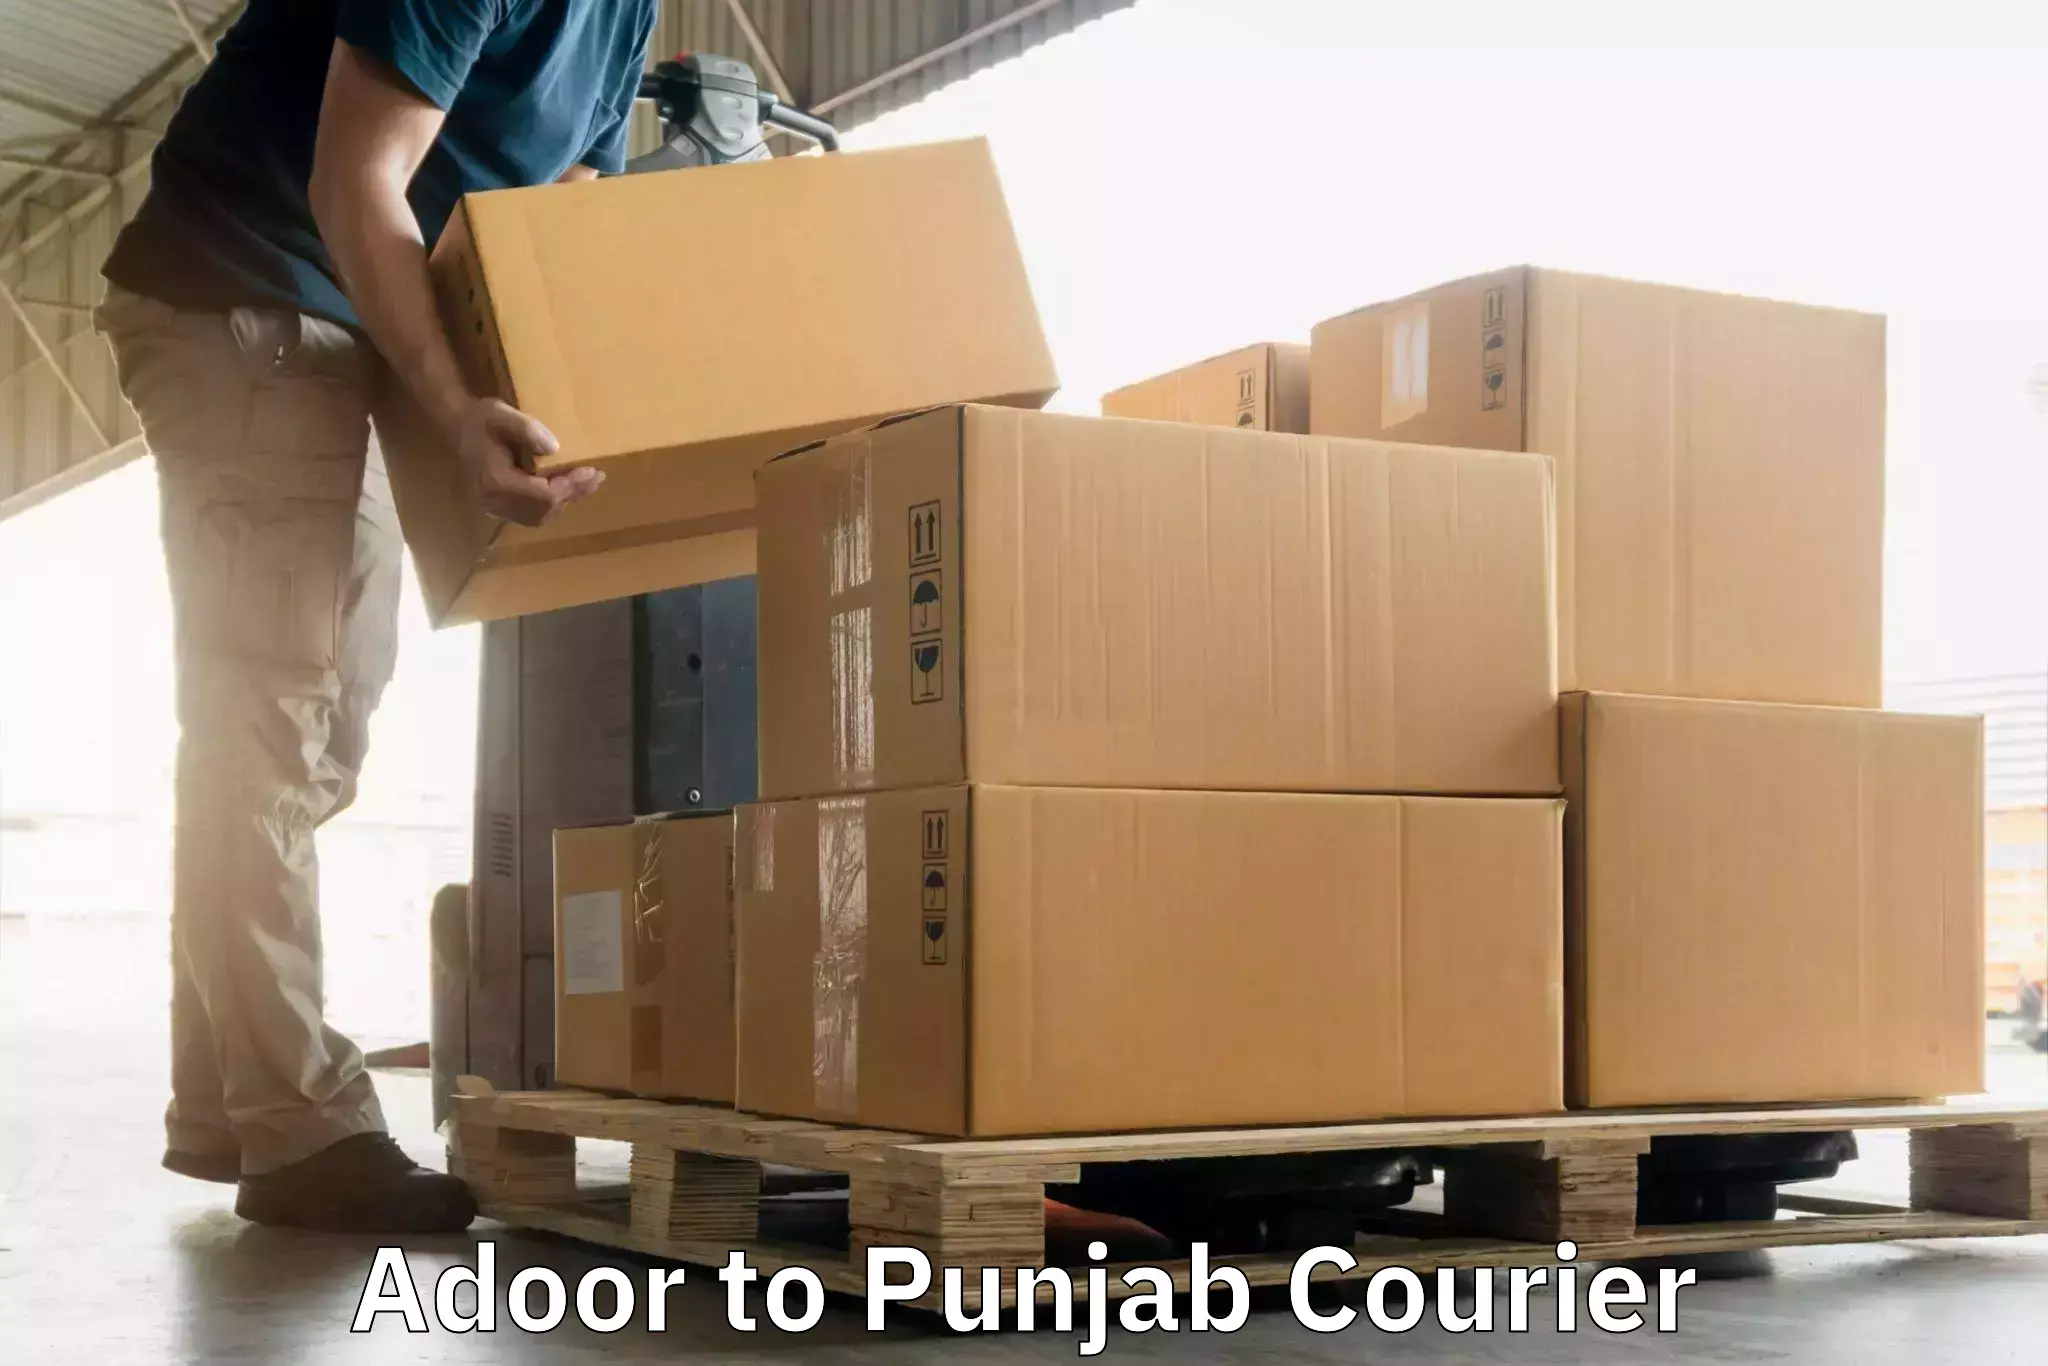 Punctual parcel services Adoor to Malerkotla